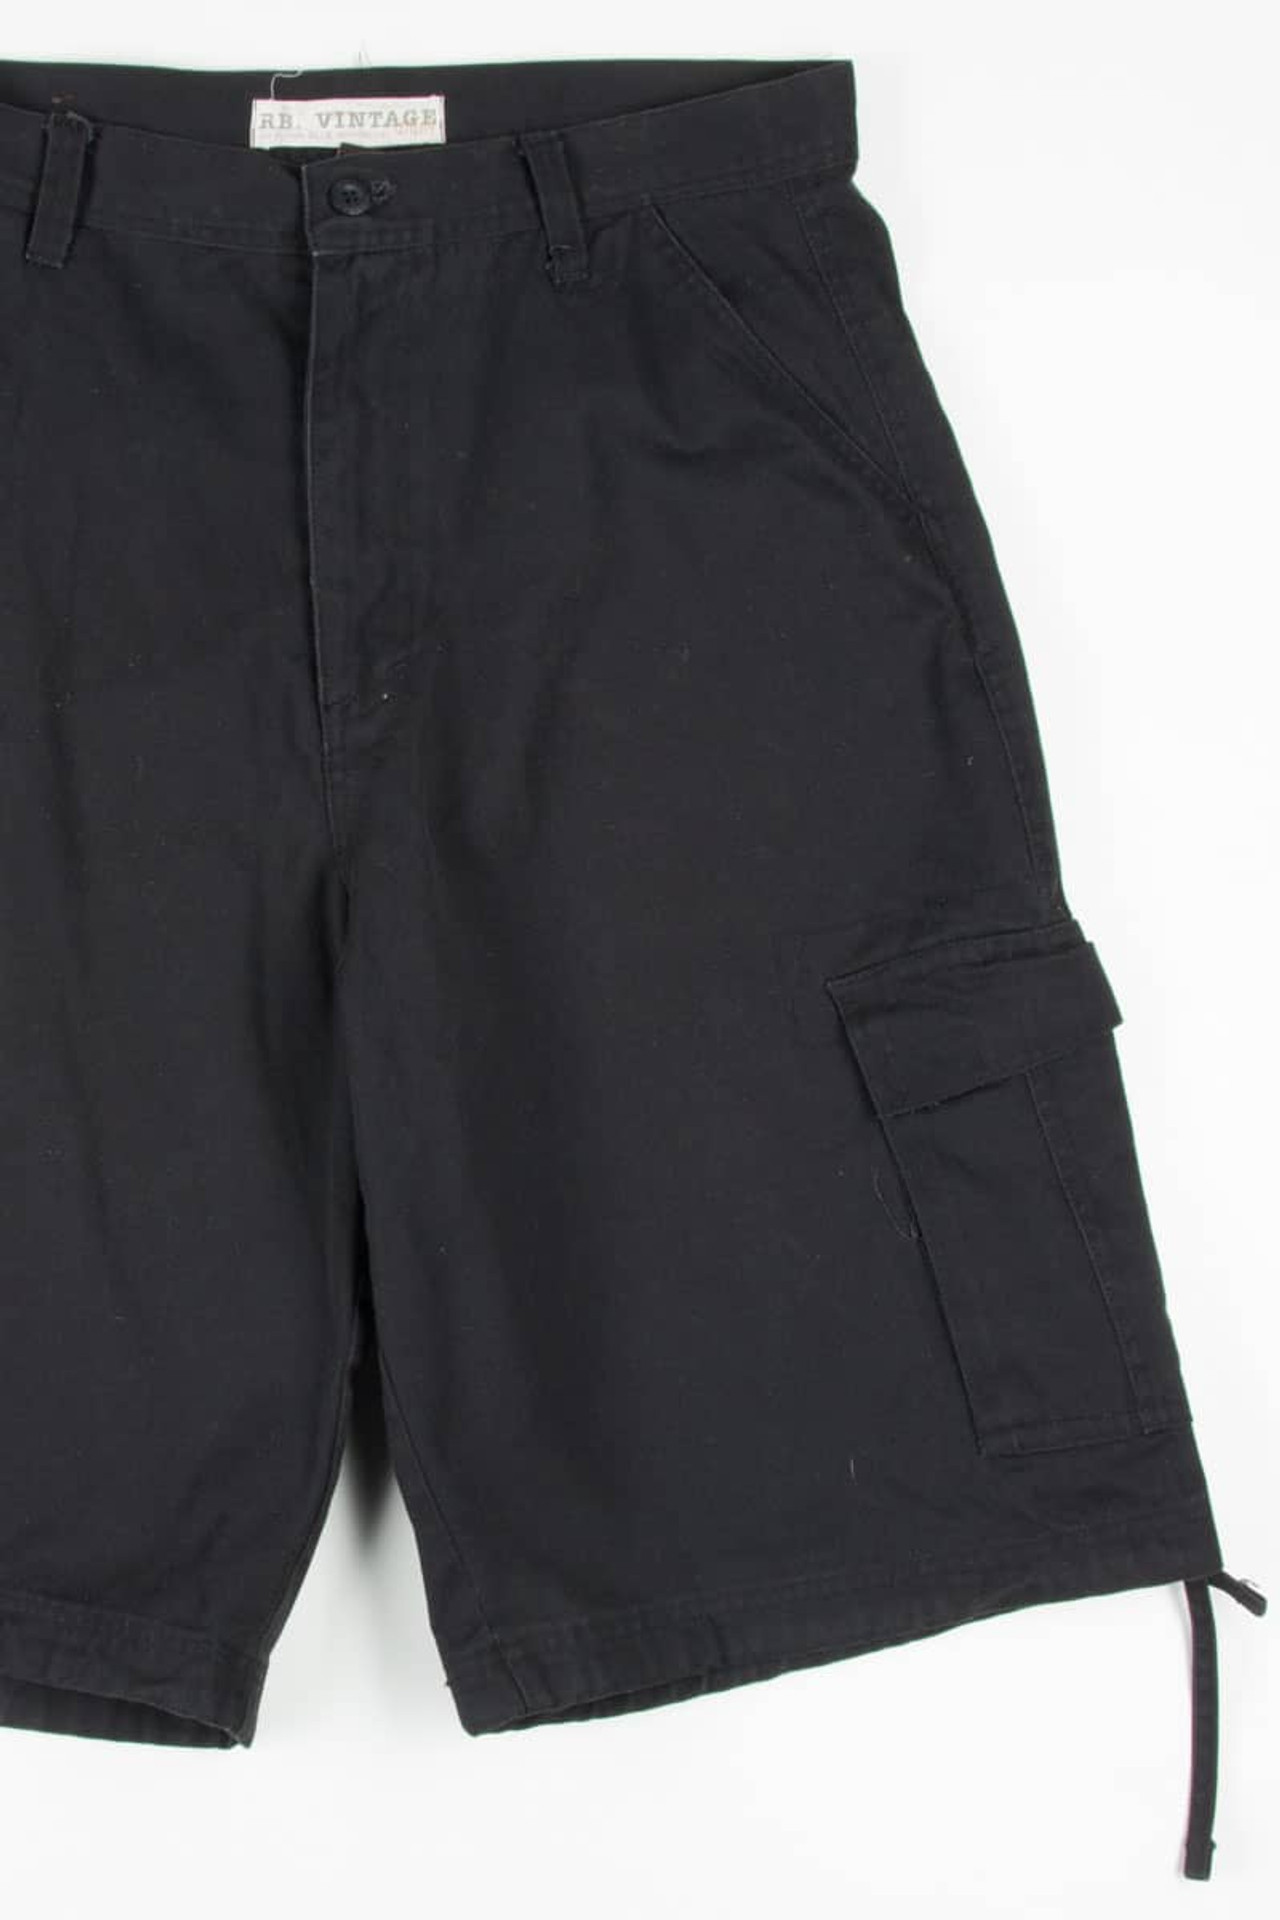 Men's Black Velcro Detail Cargo Shorts 267 (sz. 38) - Ragstock.com